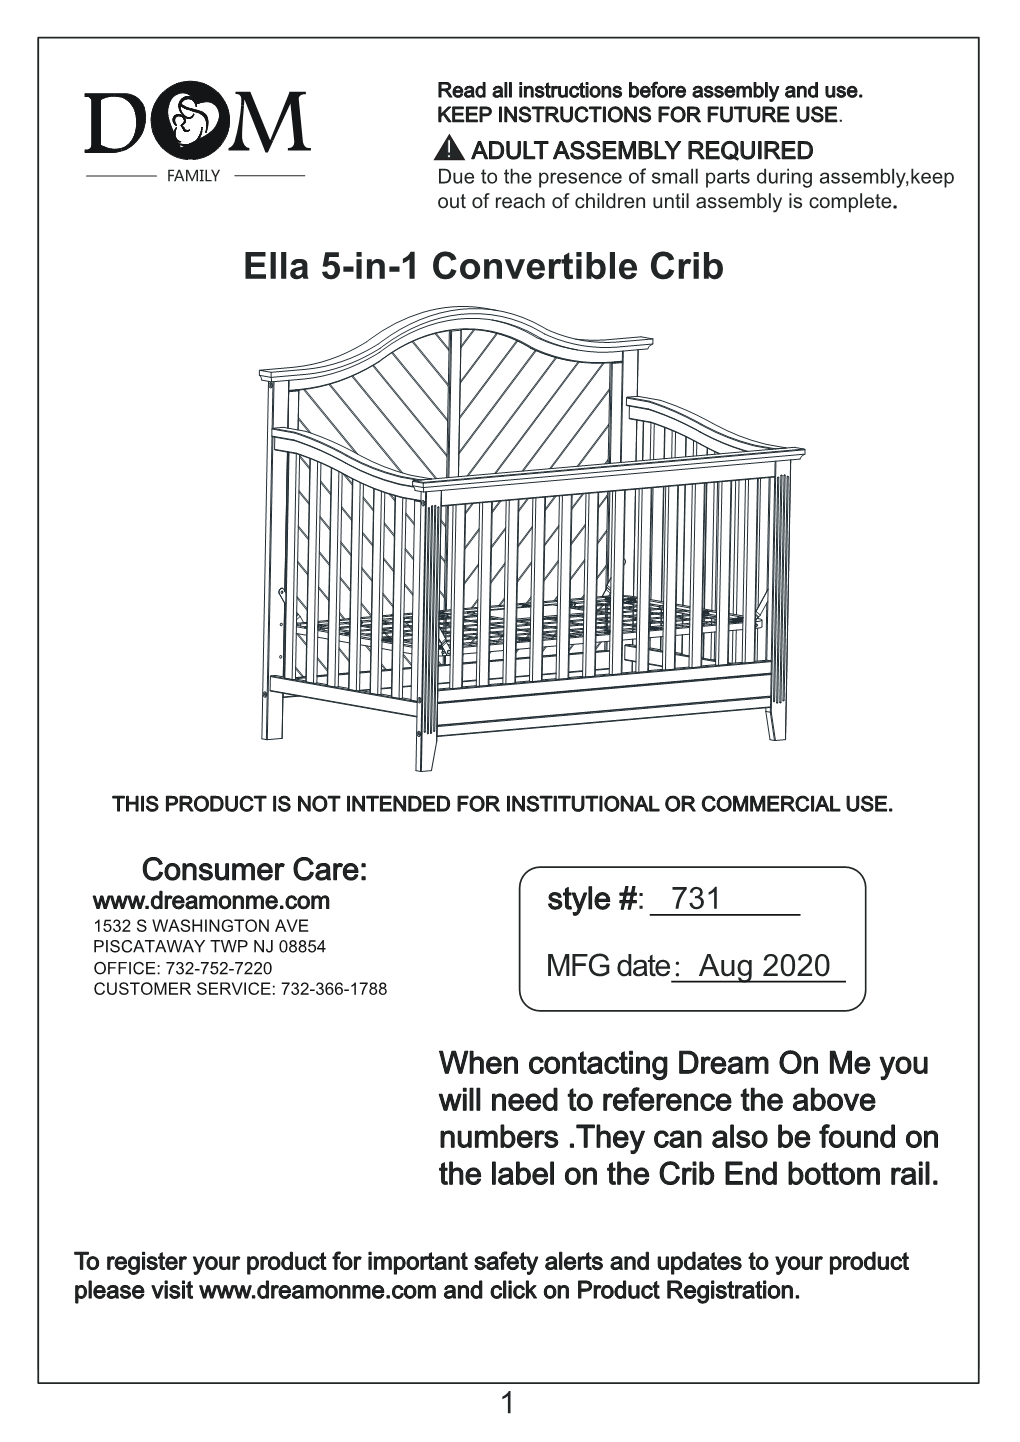 Ella 5-In-1 Convertible Crib